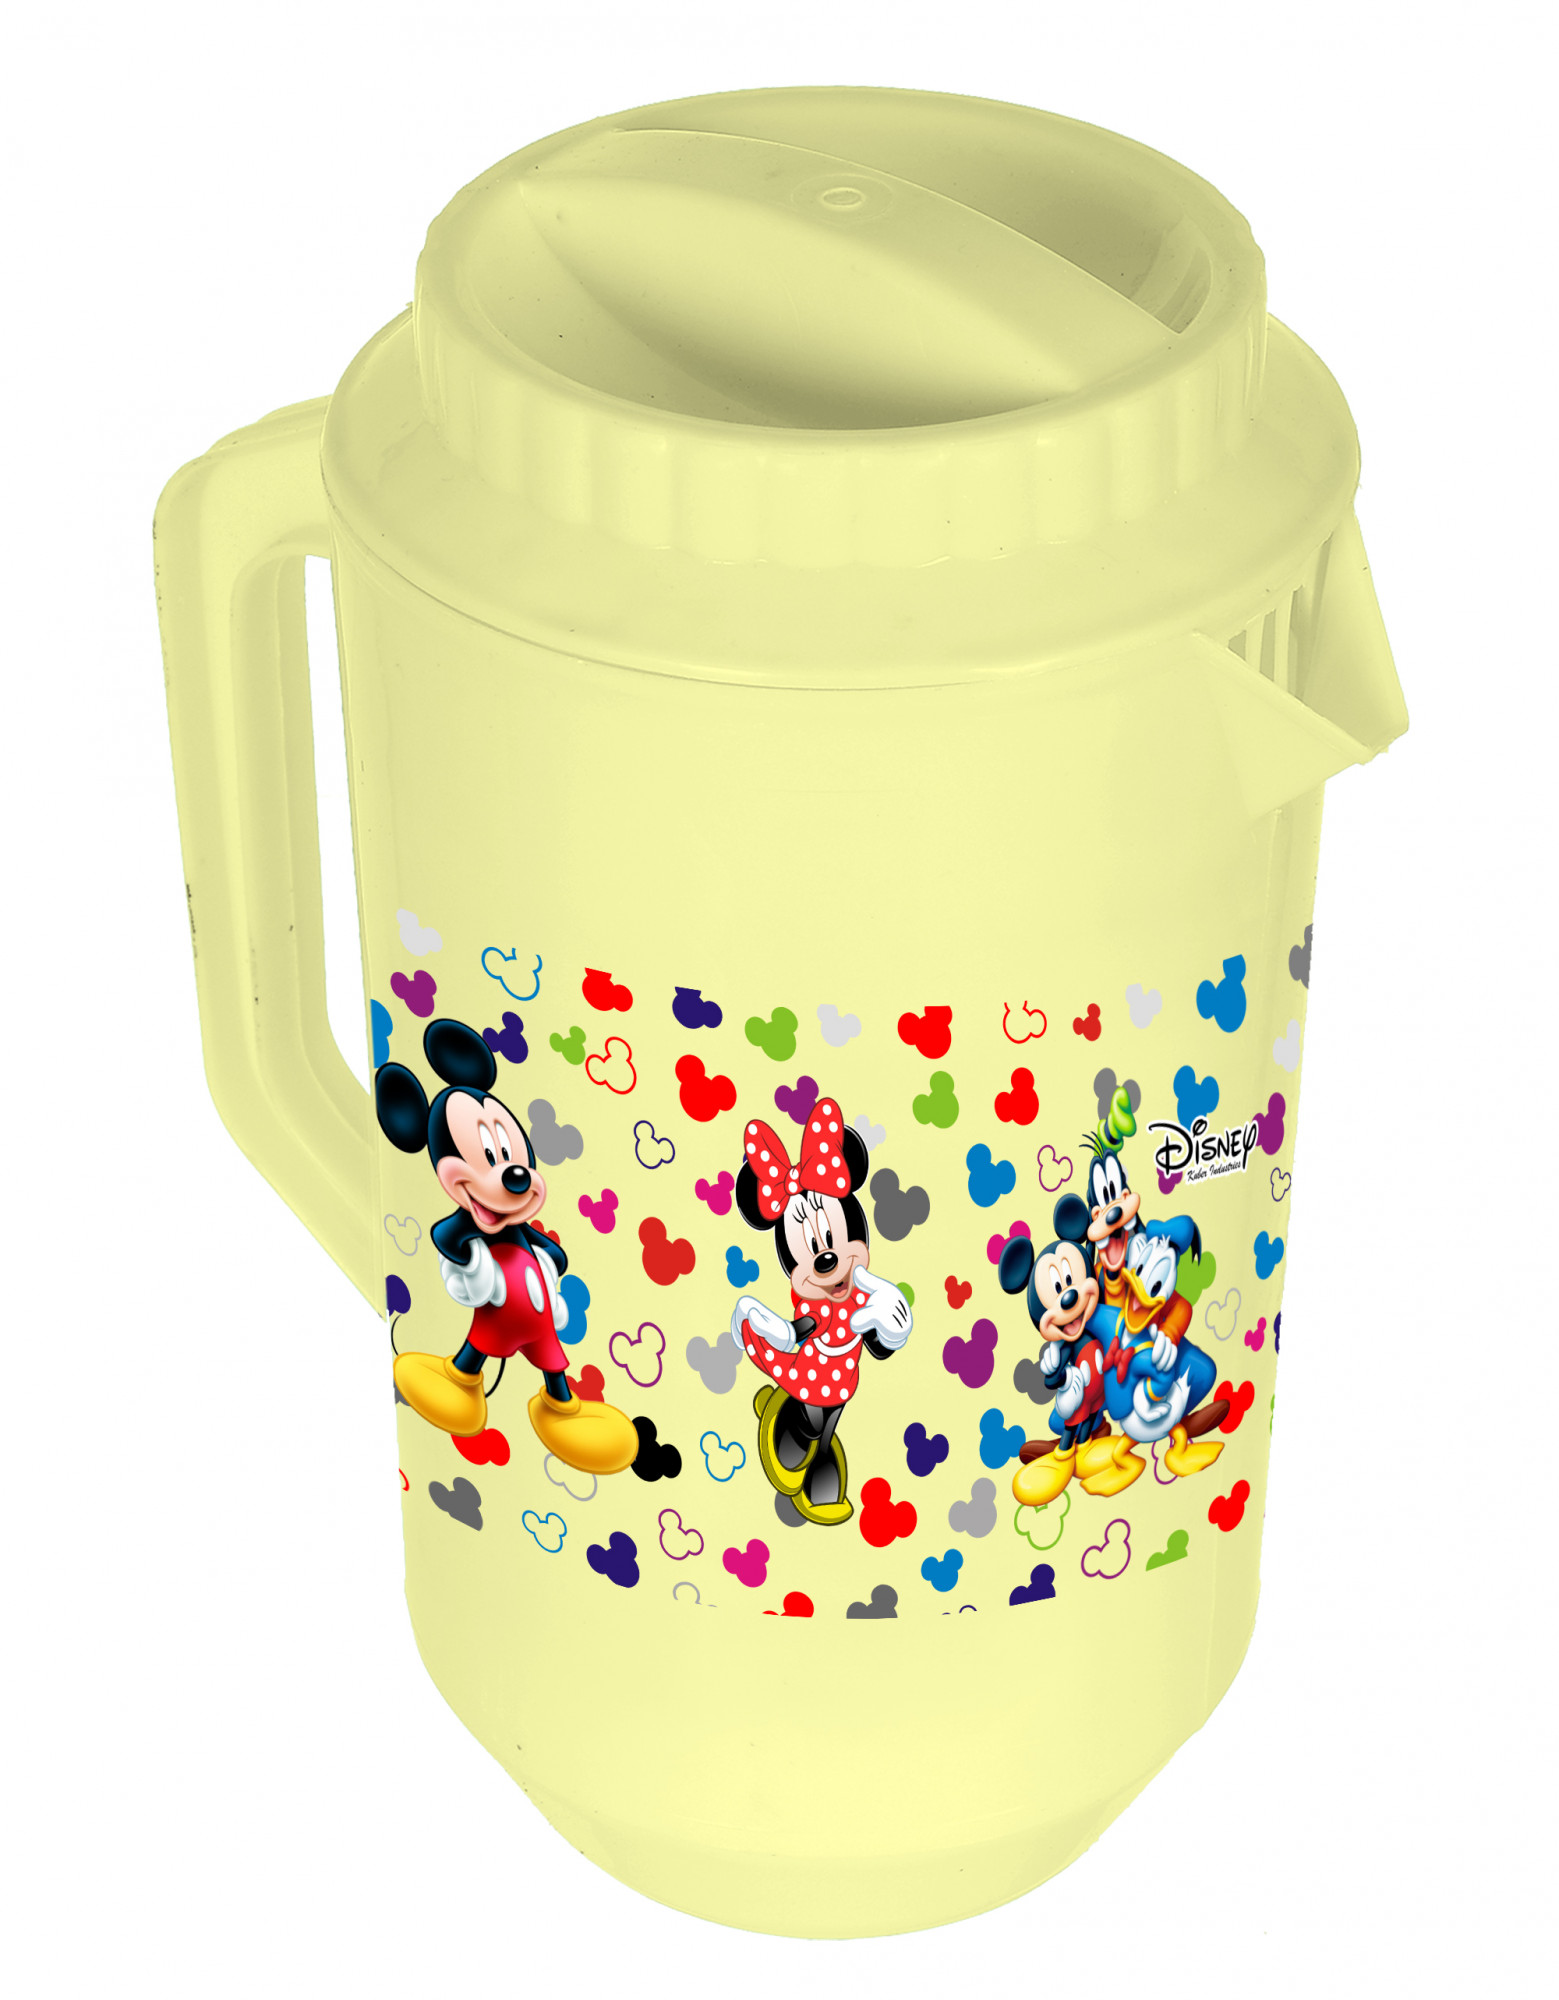 Kuber Industries Disney Team Mickey Print Unbreakable Multipurpose Plastic Water & Juice Jug With Lid,2 Ltr (Cream)